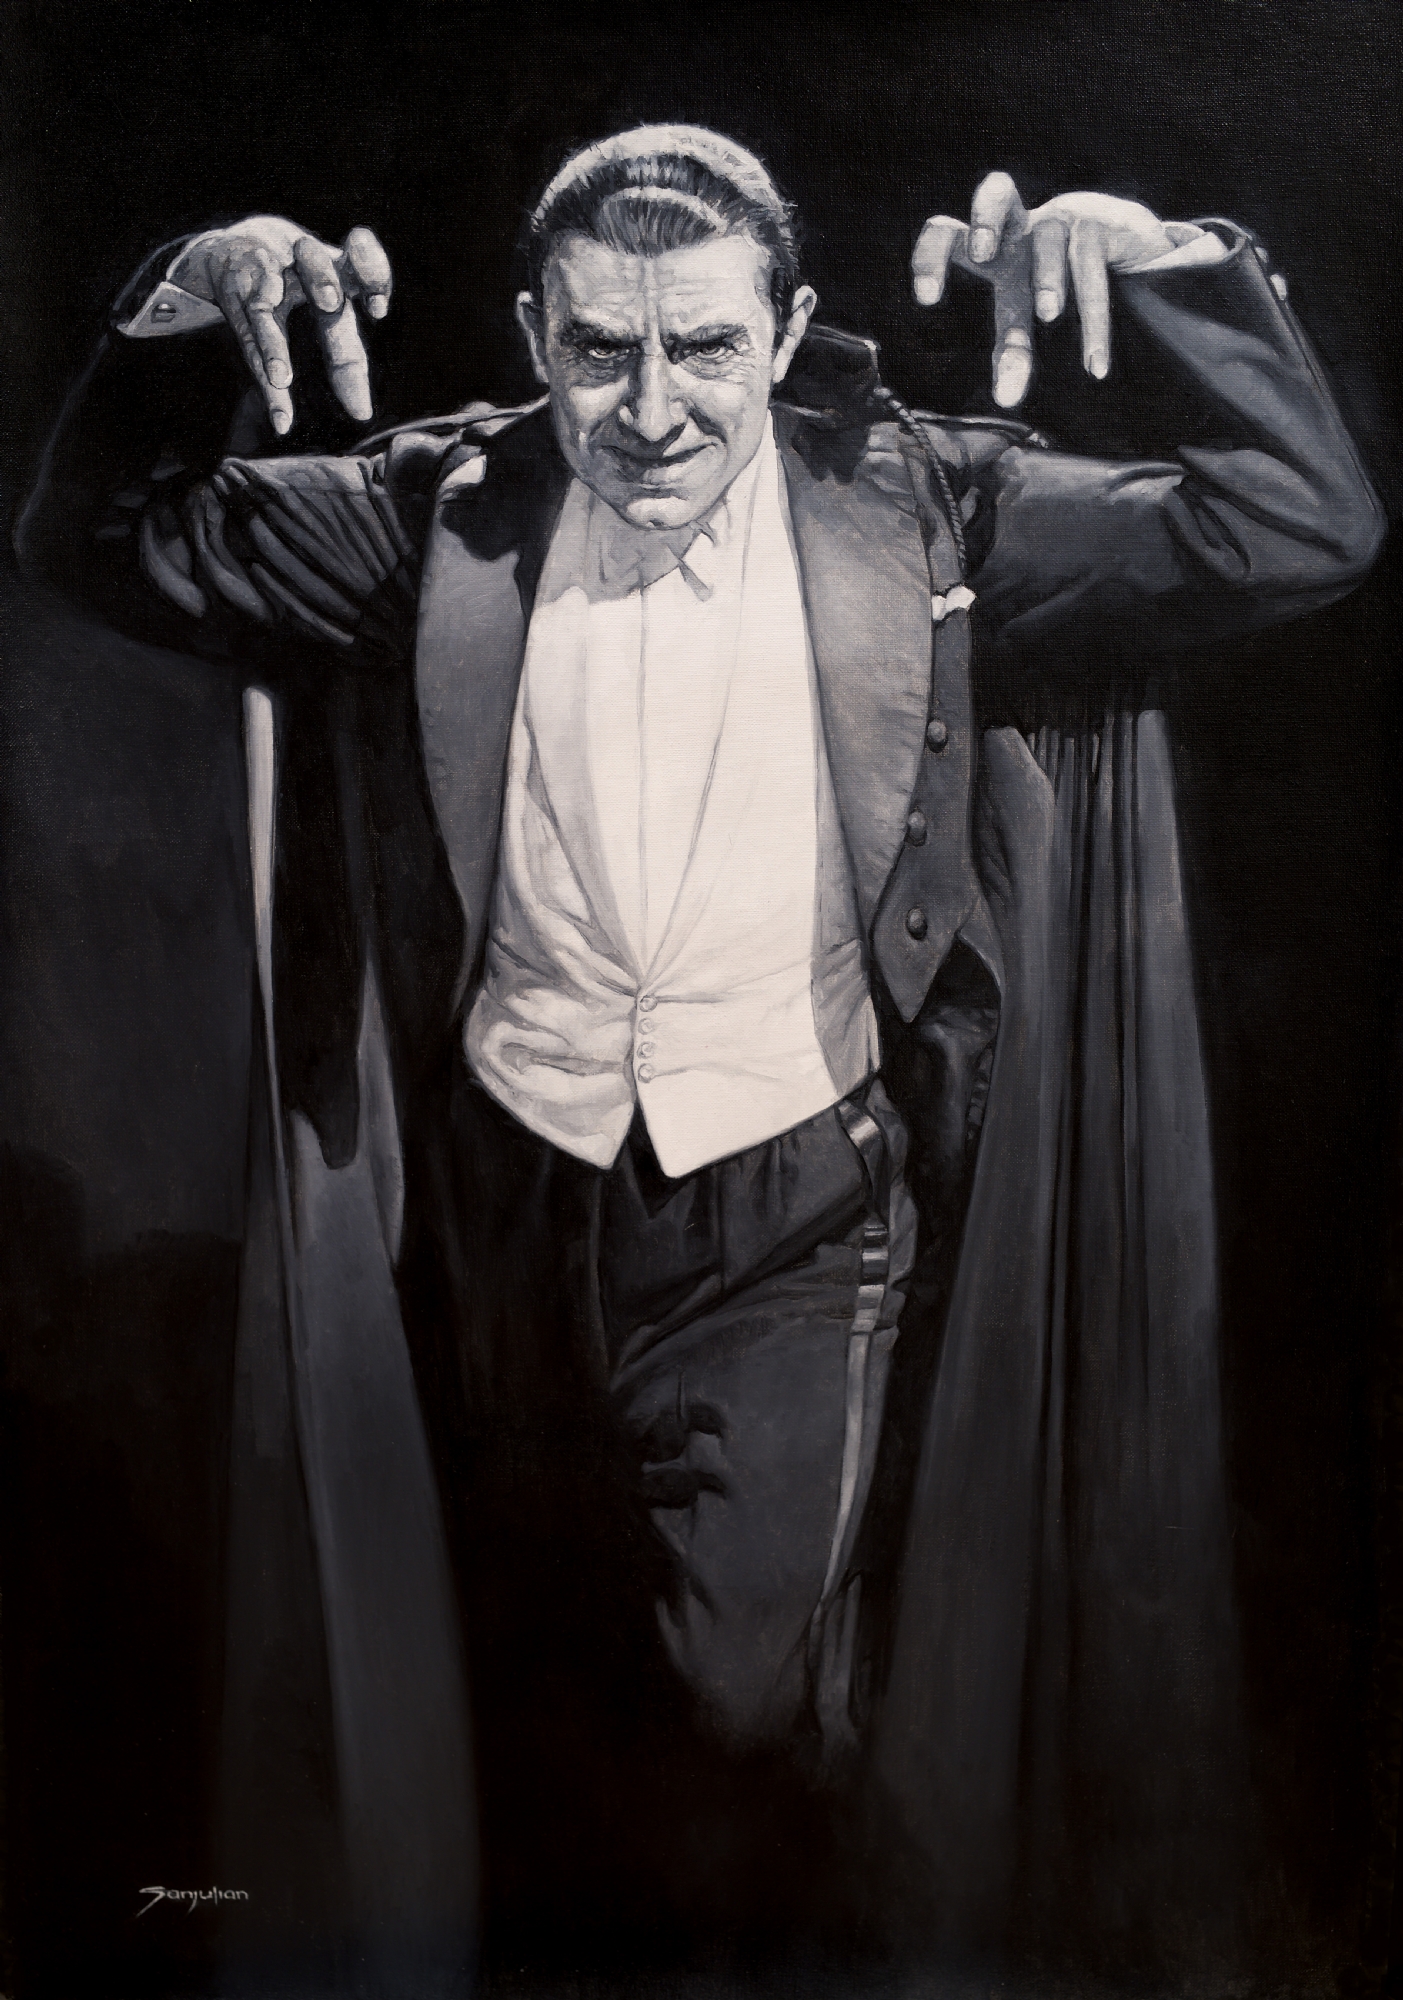 Bela Lugosi Dracula painting by Sanjulian , in Charles Dahan's Original